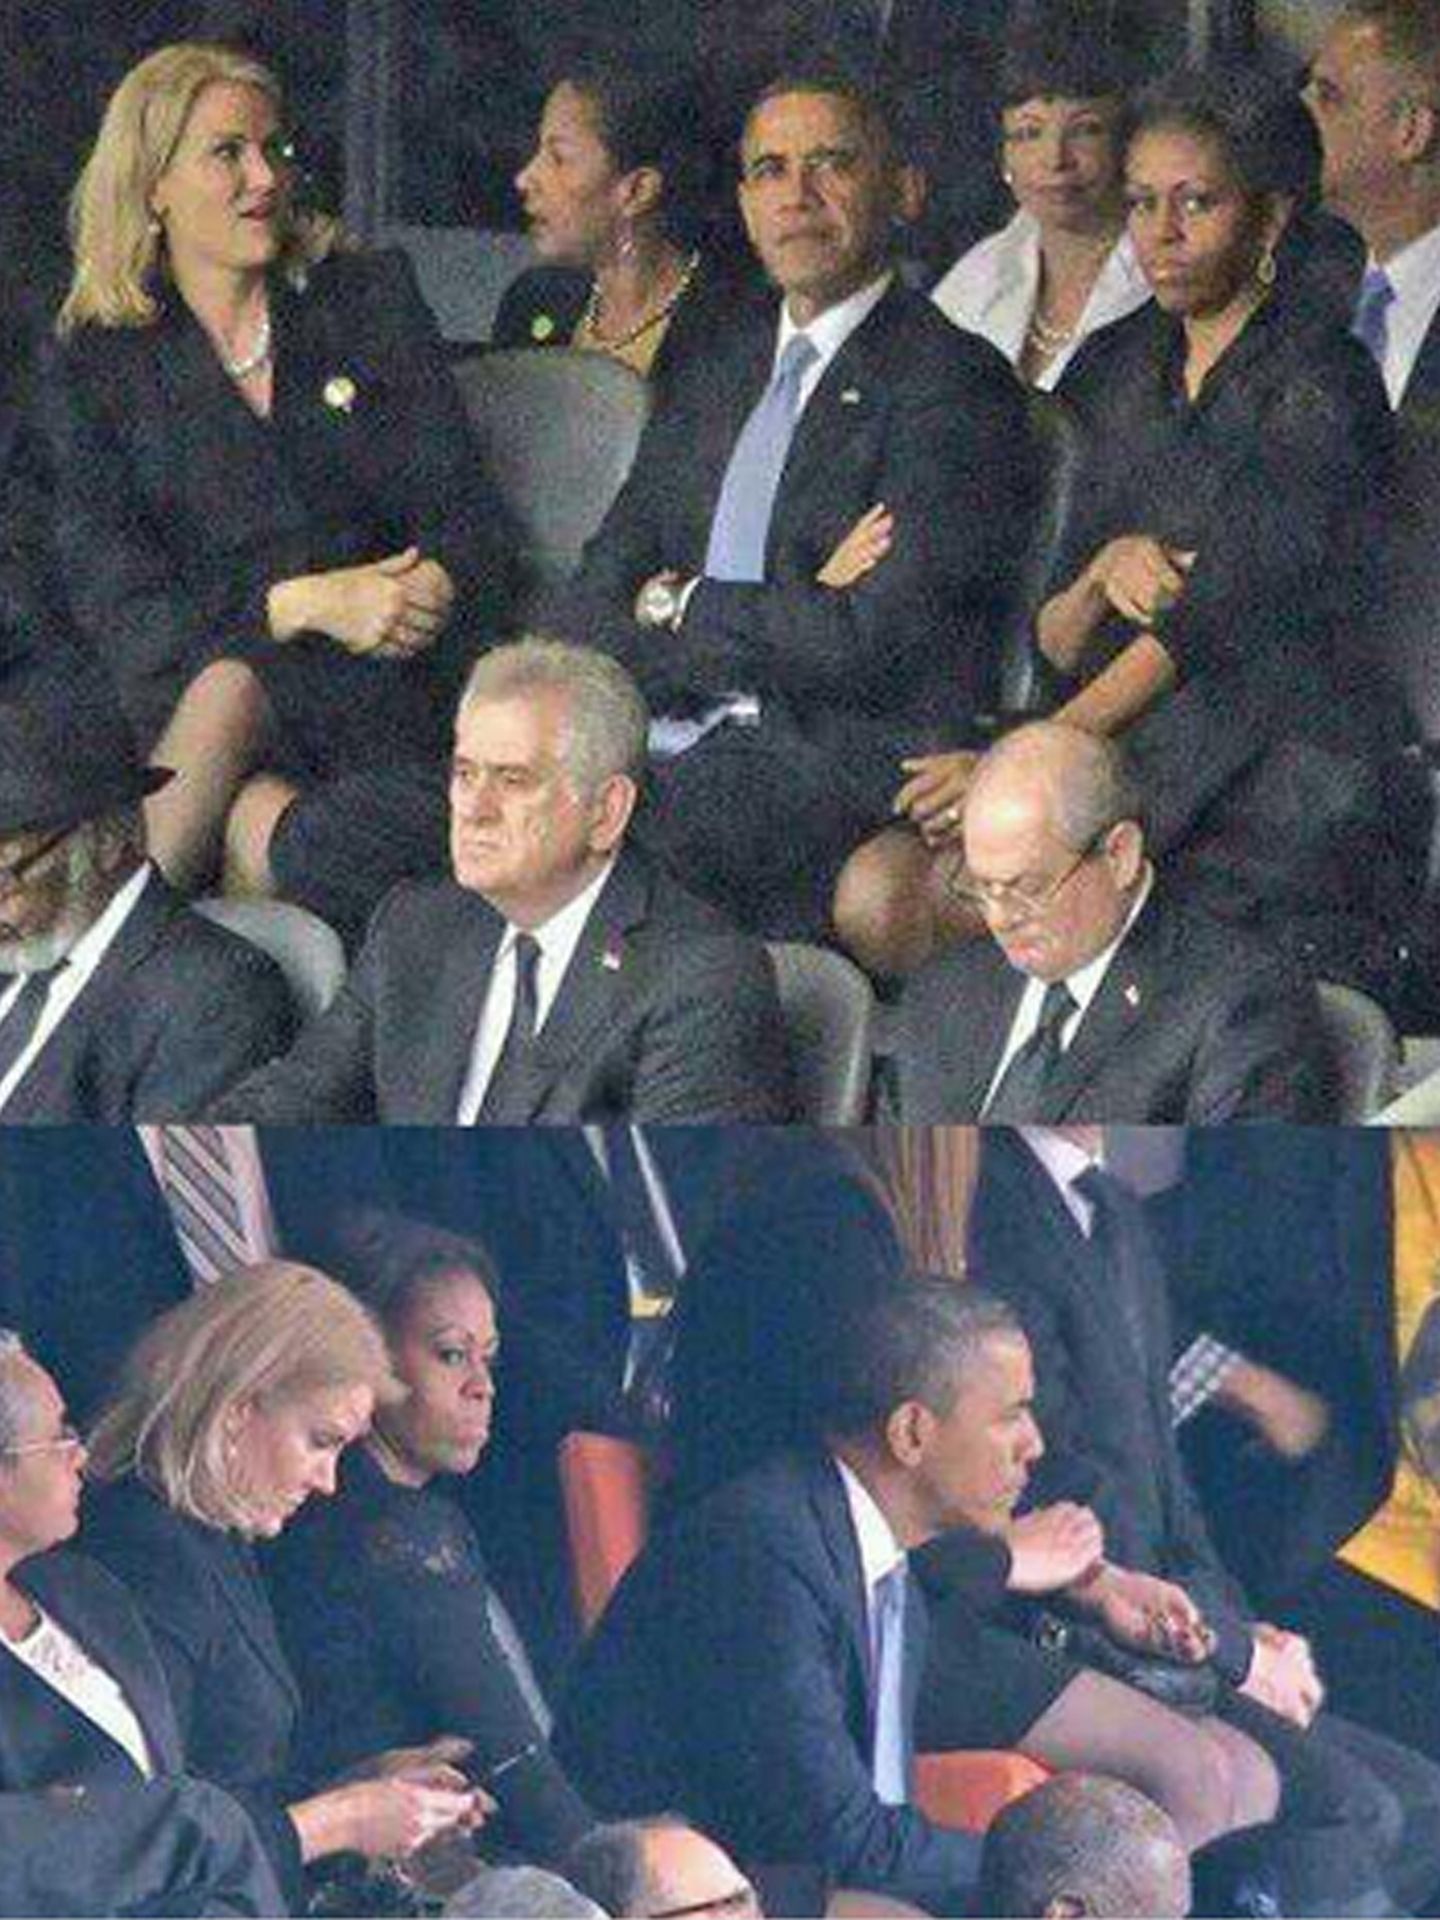 Una enojada Michelle Obama termina sentándose entre su marido y Helle Thorning-Schmidt.